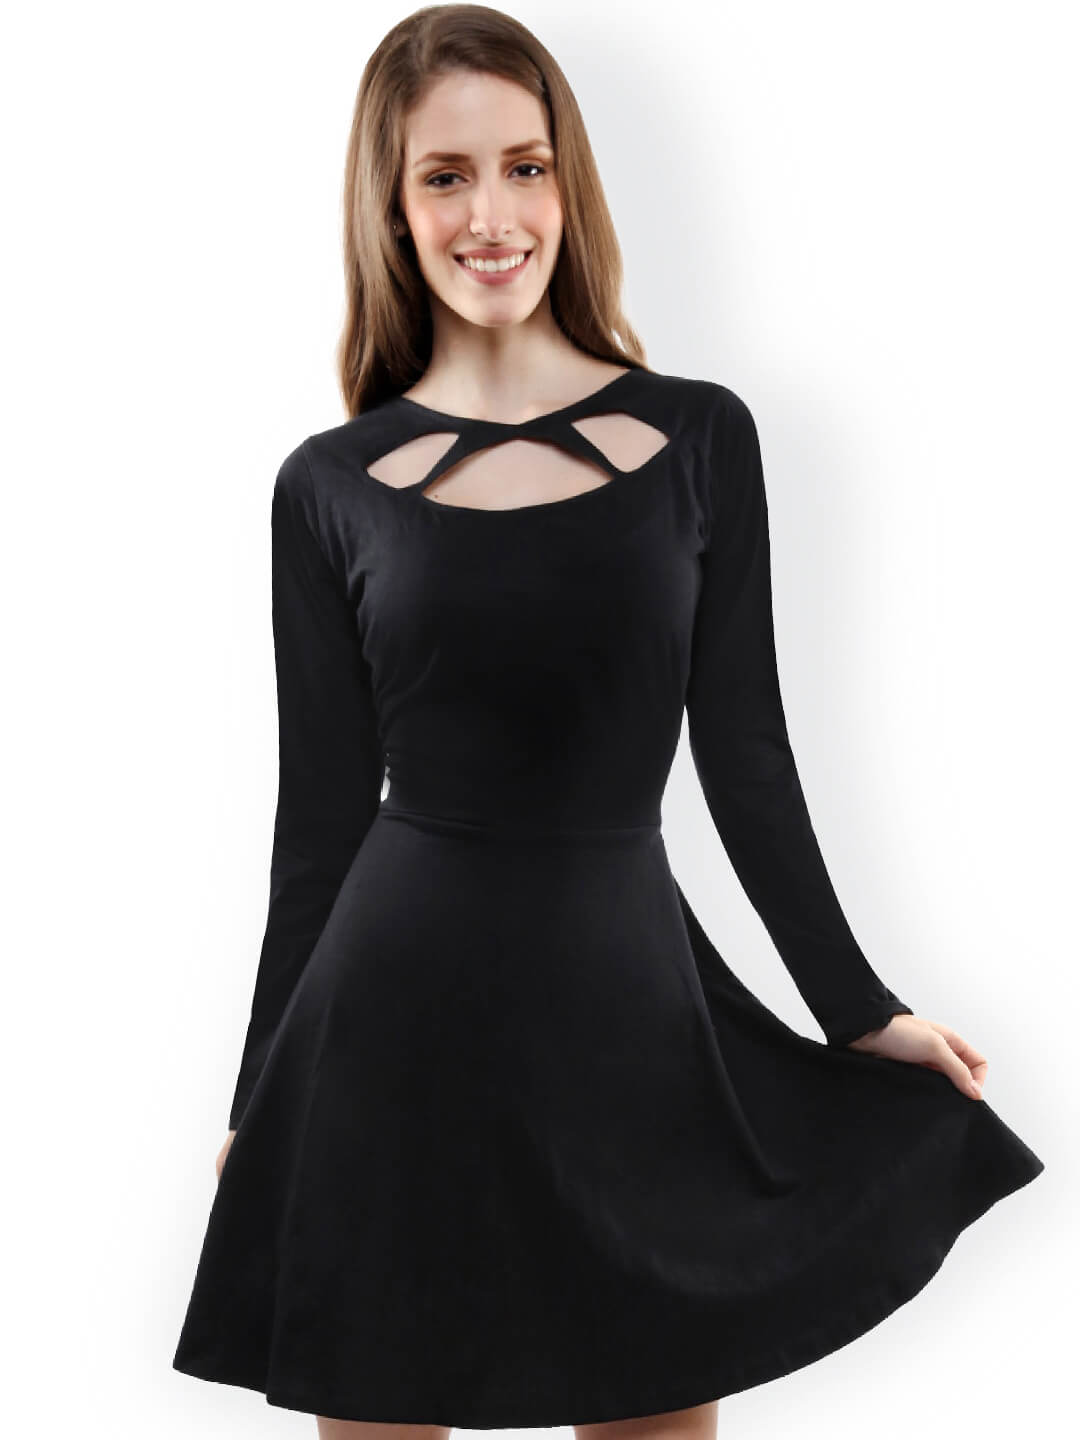 Black dresses for women